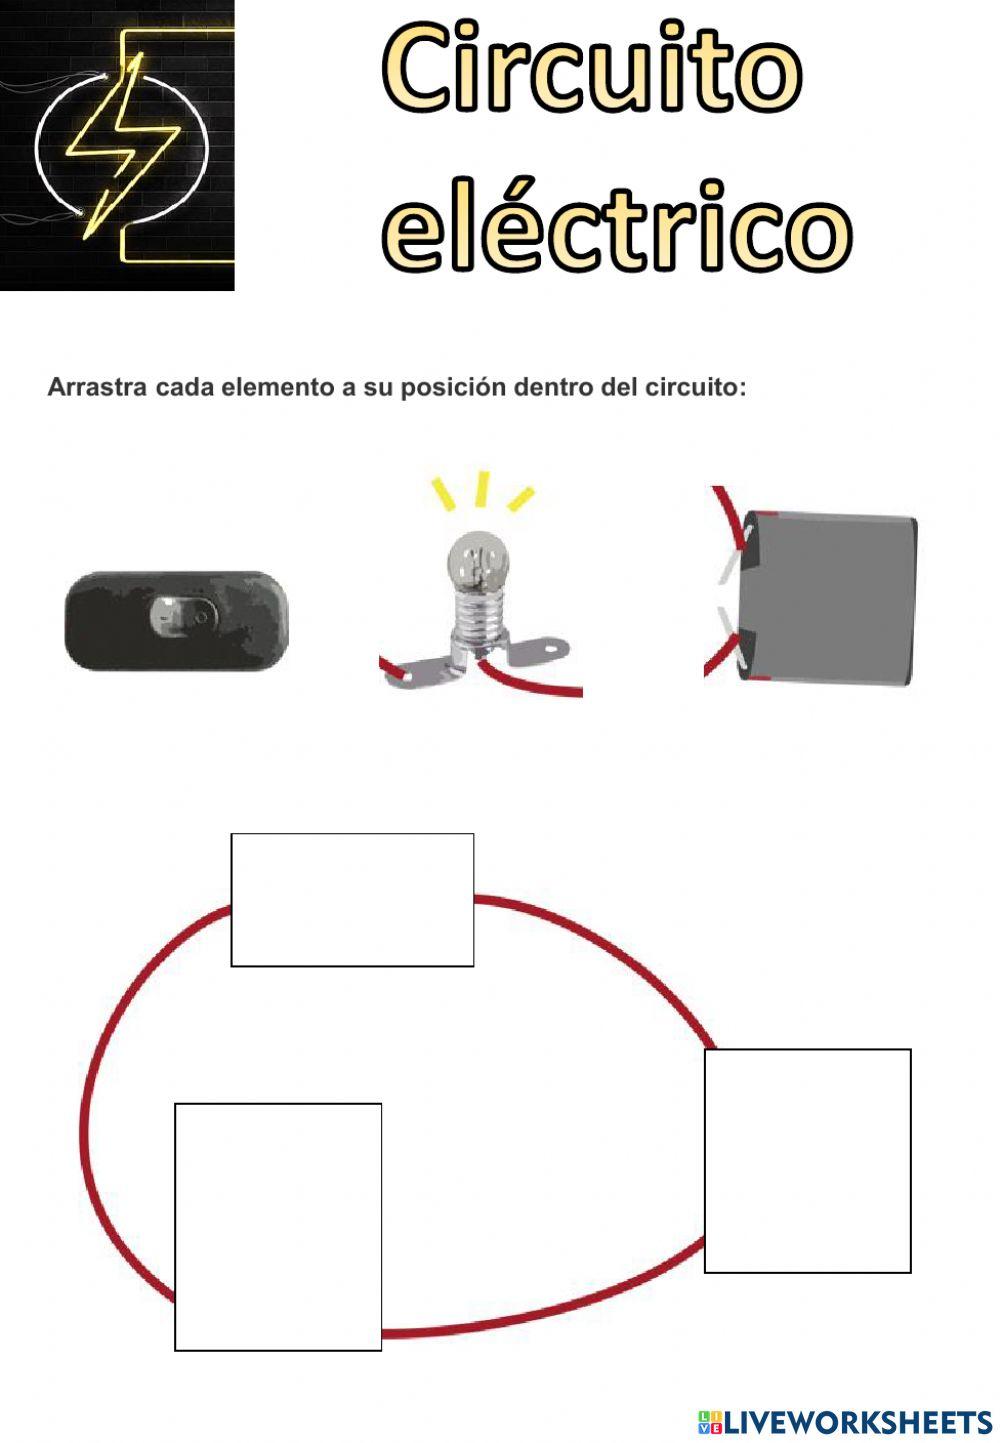 Circuito eléctrico